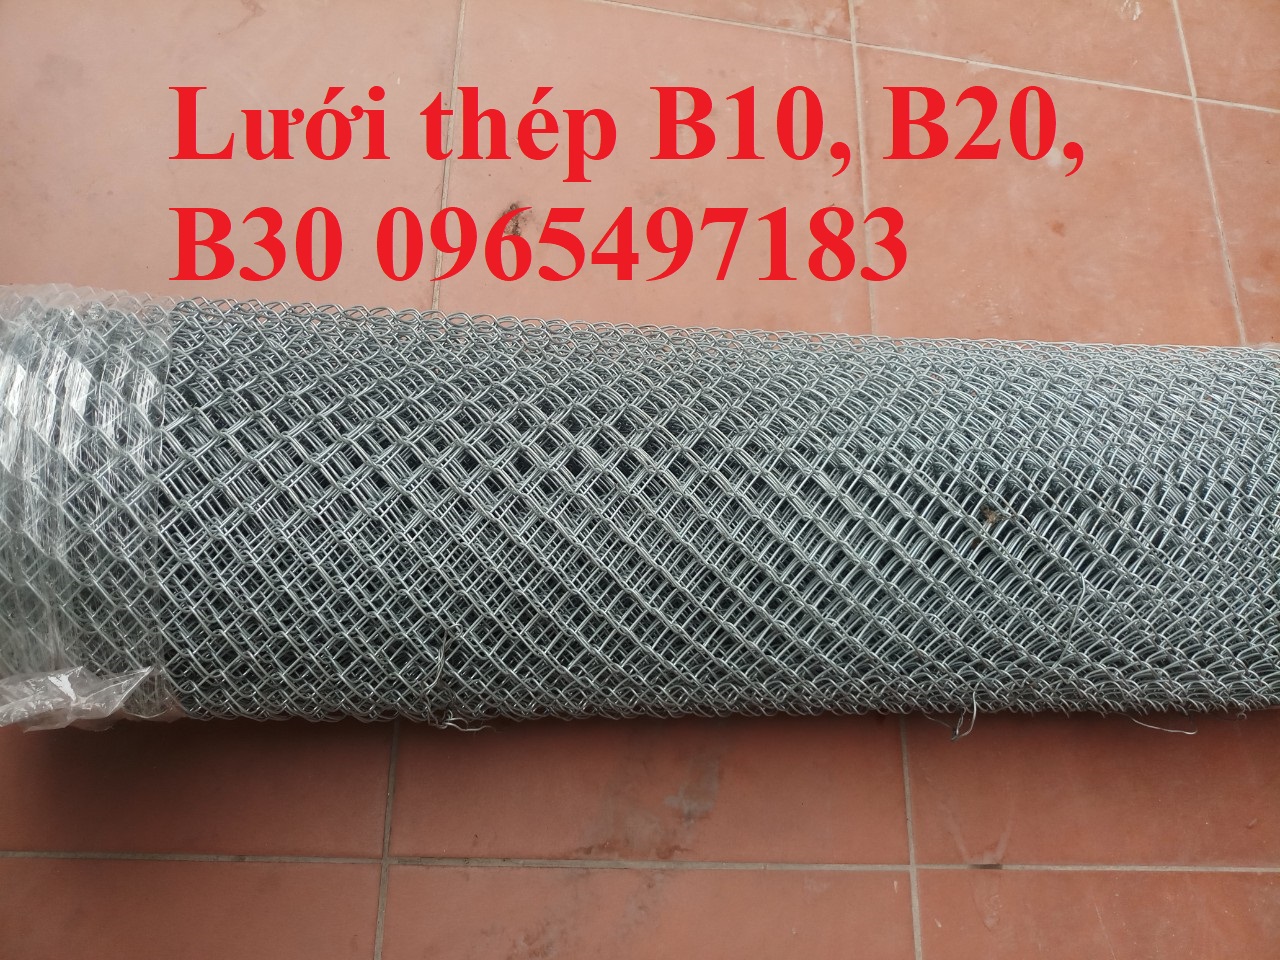 Lưới thép B10, B20 mạ kẽm khổ 1m, 1.2m dài 10m có sẵn tại Hà Nội